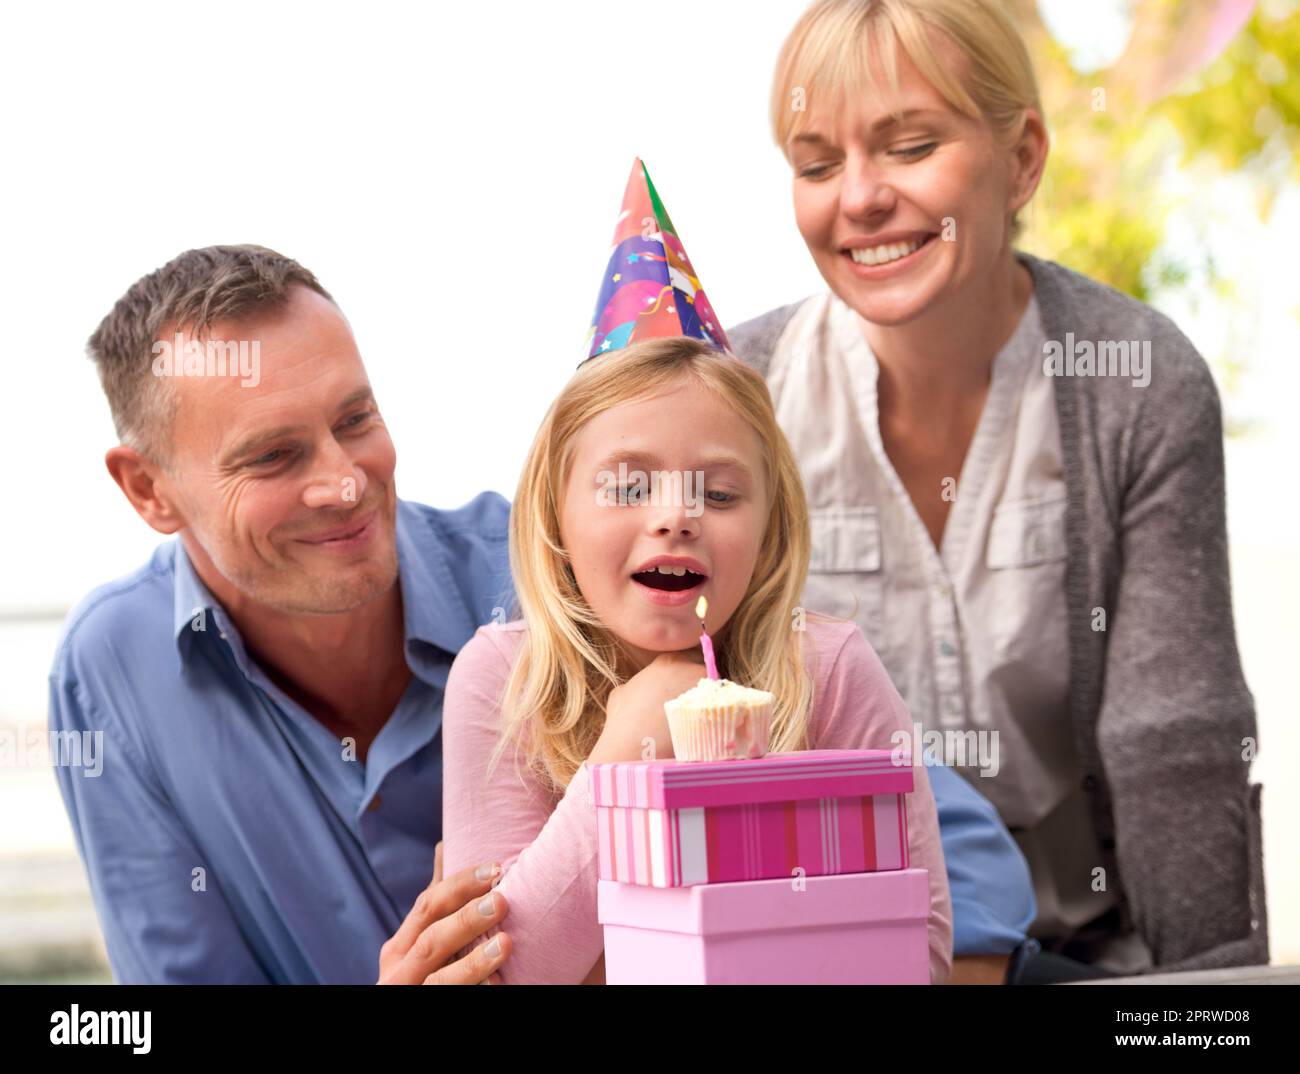 Machen Sie einen Wunsch. Eine kurze Aufnahme eines glücklichen Paares, das ihrem kleinen Mädchen zusieht, wie es an ihrem Geburtstag eine Kerze ausbläst. Stockfoto